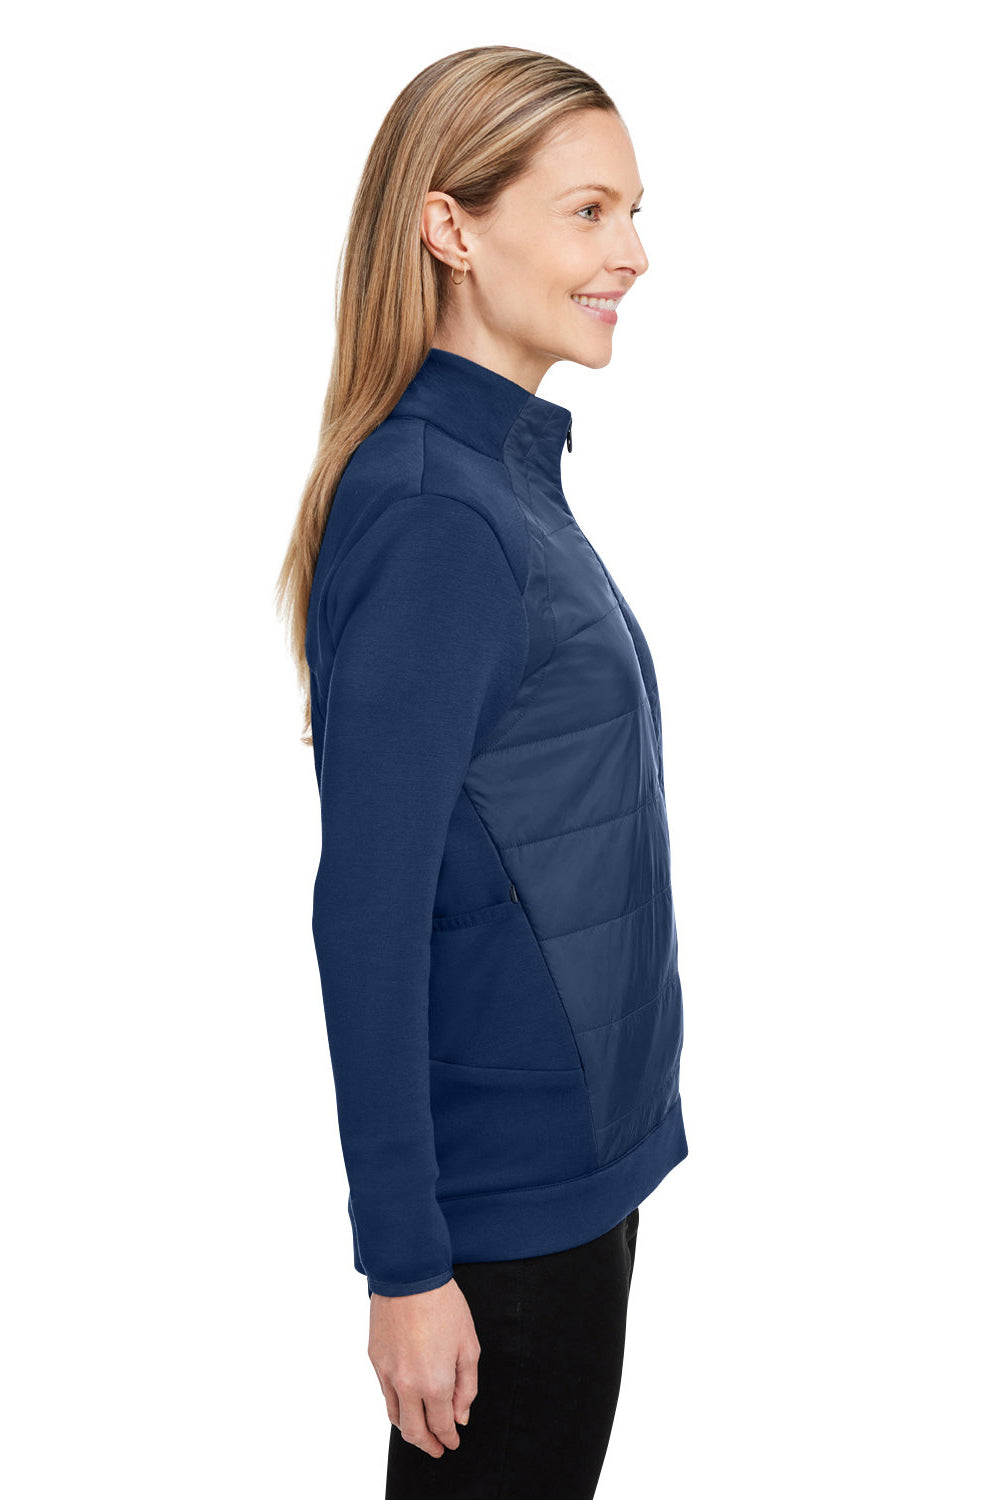 Spyder S17978 Womens Impact Full Zip Jacket Frontier Blue Side